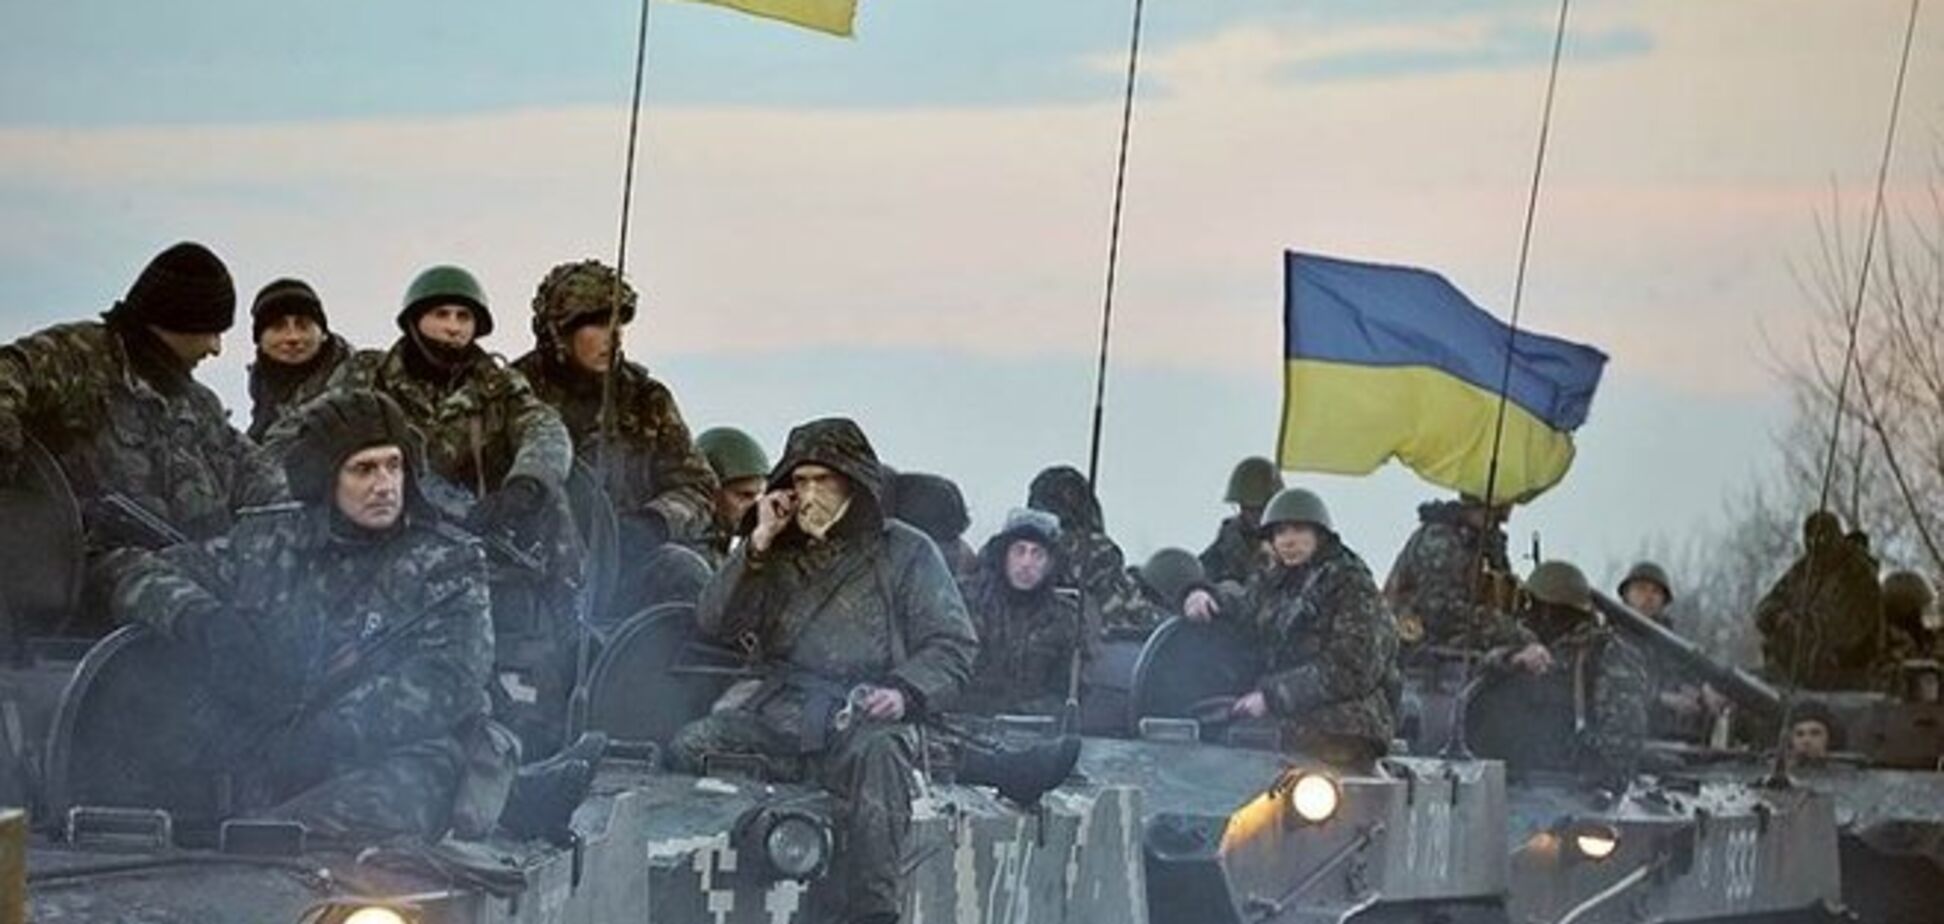 АТО на востоке Украины возобновлена - Ярема